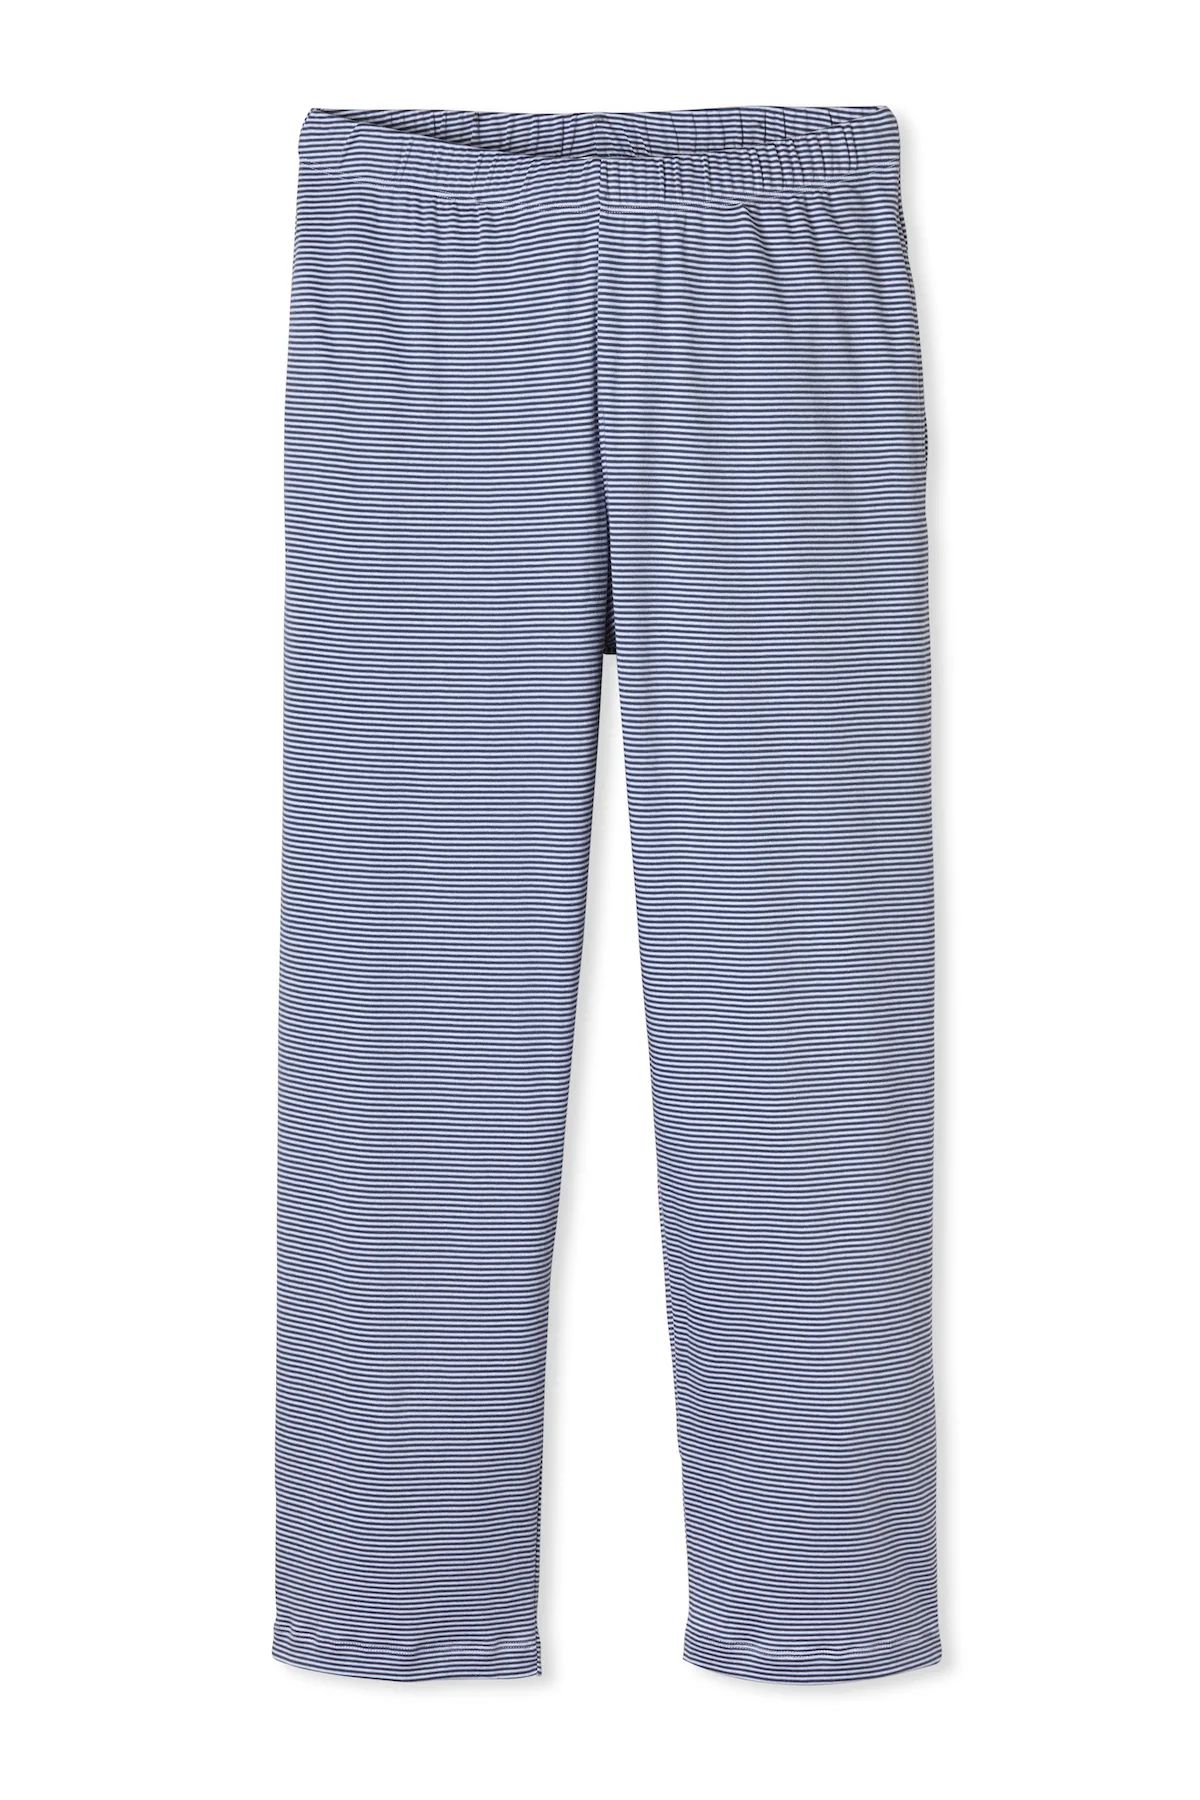 Men's Pima Pajama Pants in True Navy | Lake Pajamas